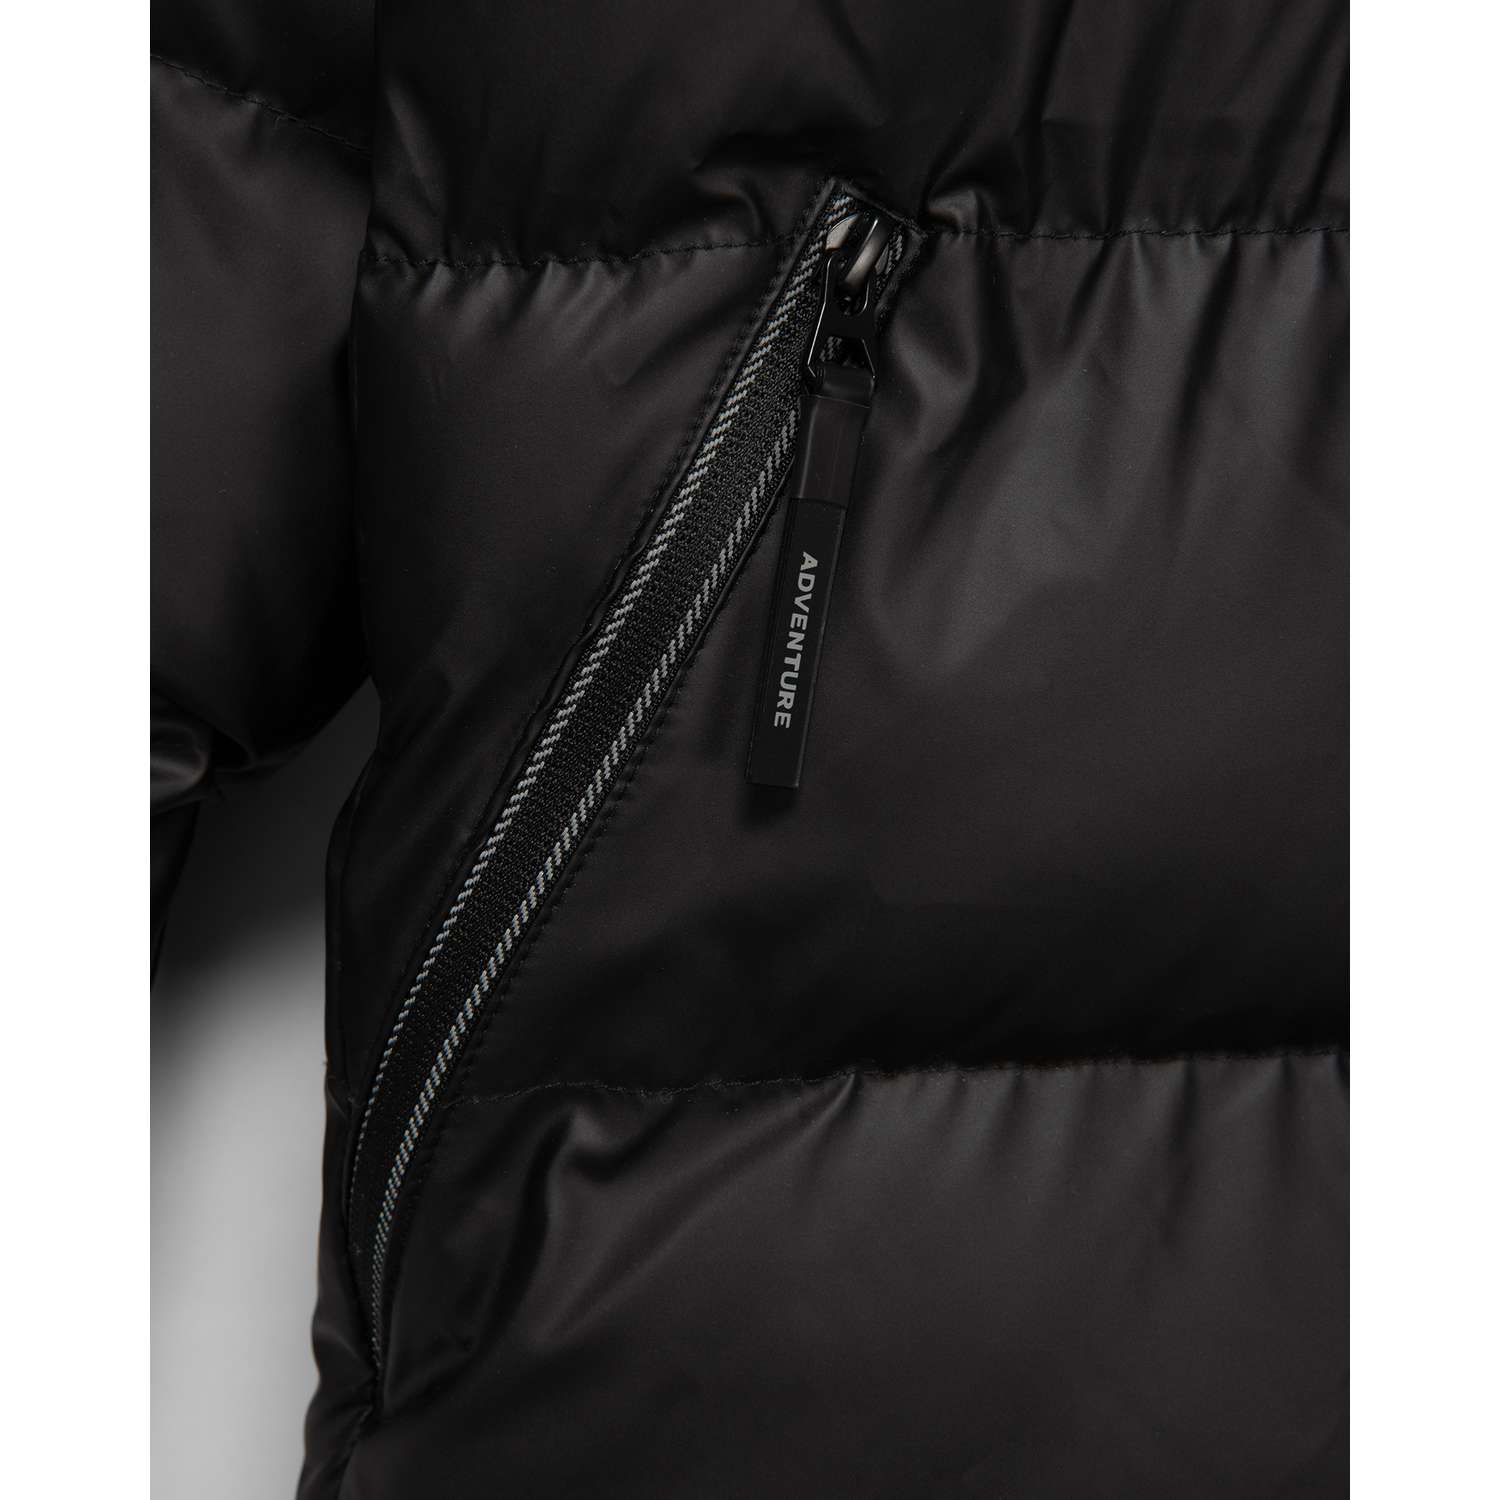 Куртка Futurino Cool W23FC5-B150tb-99 - фото 6